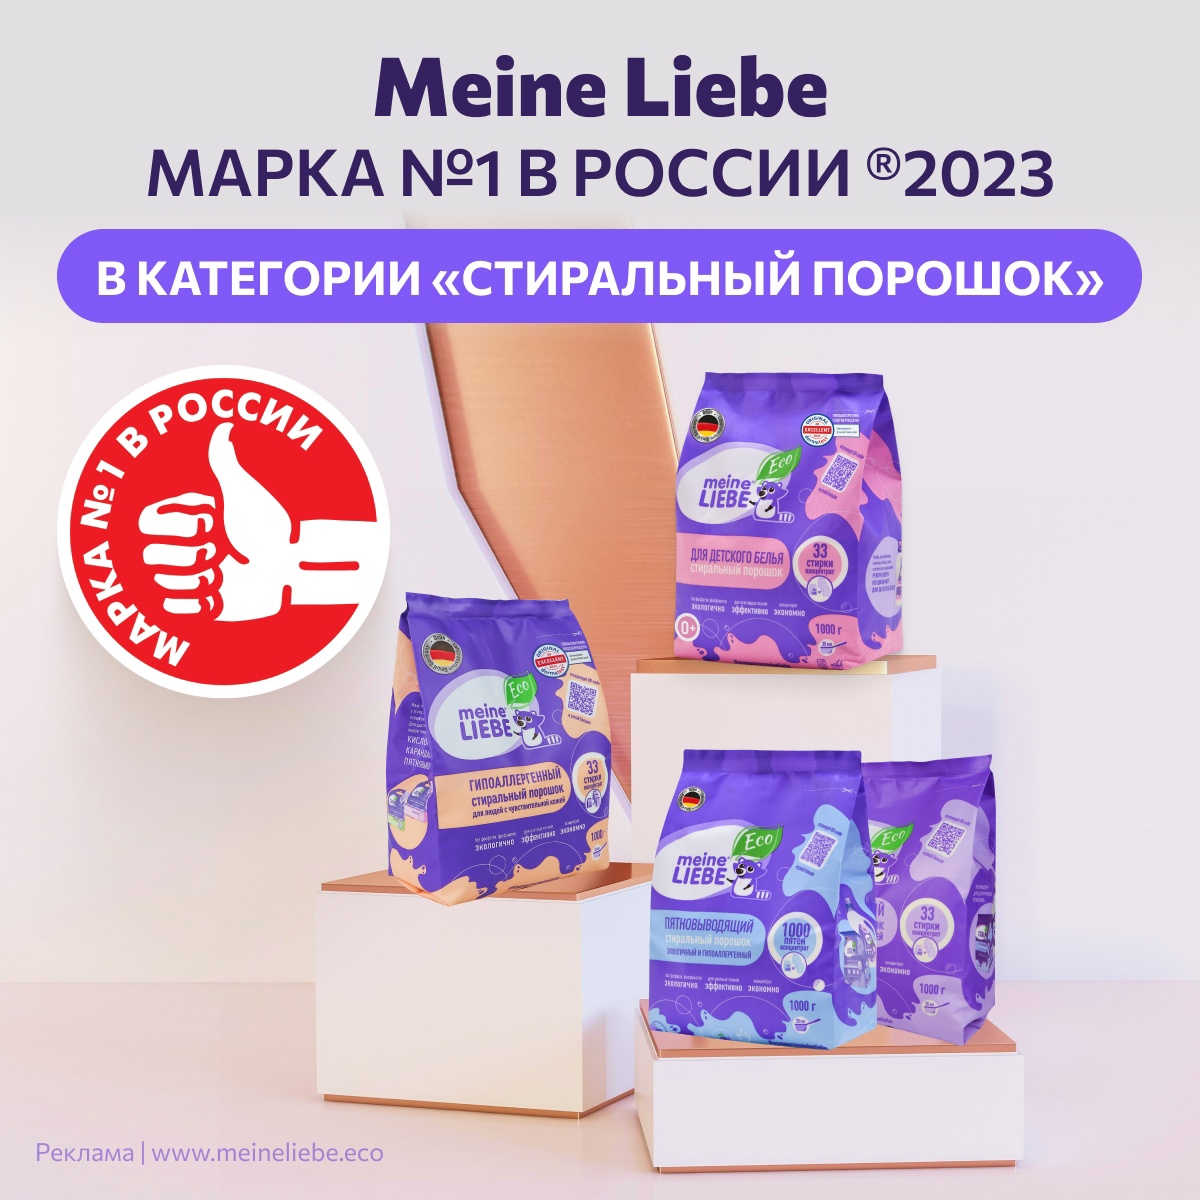 Meine Liebe - марка №1 в России 2023